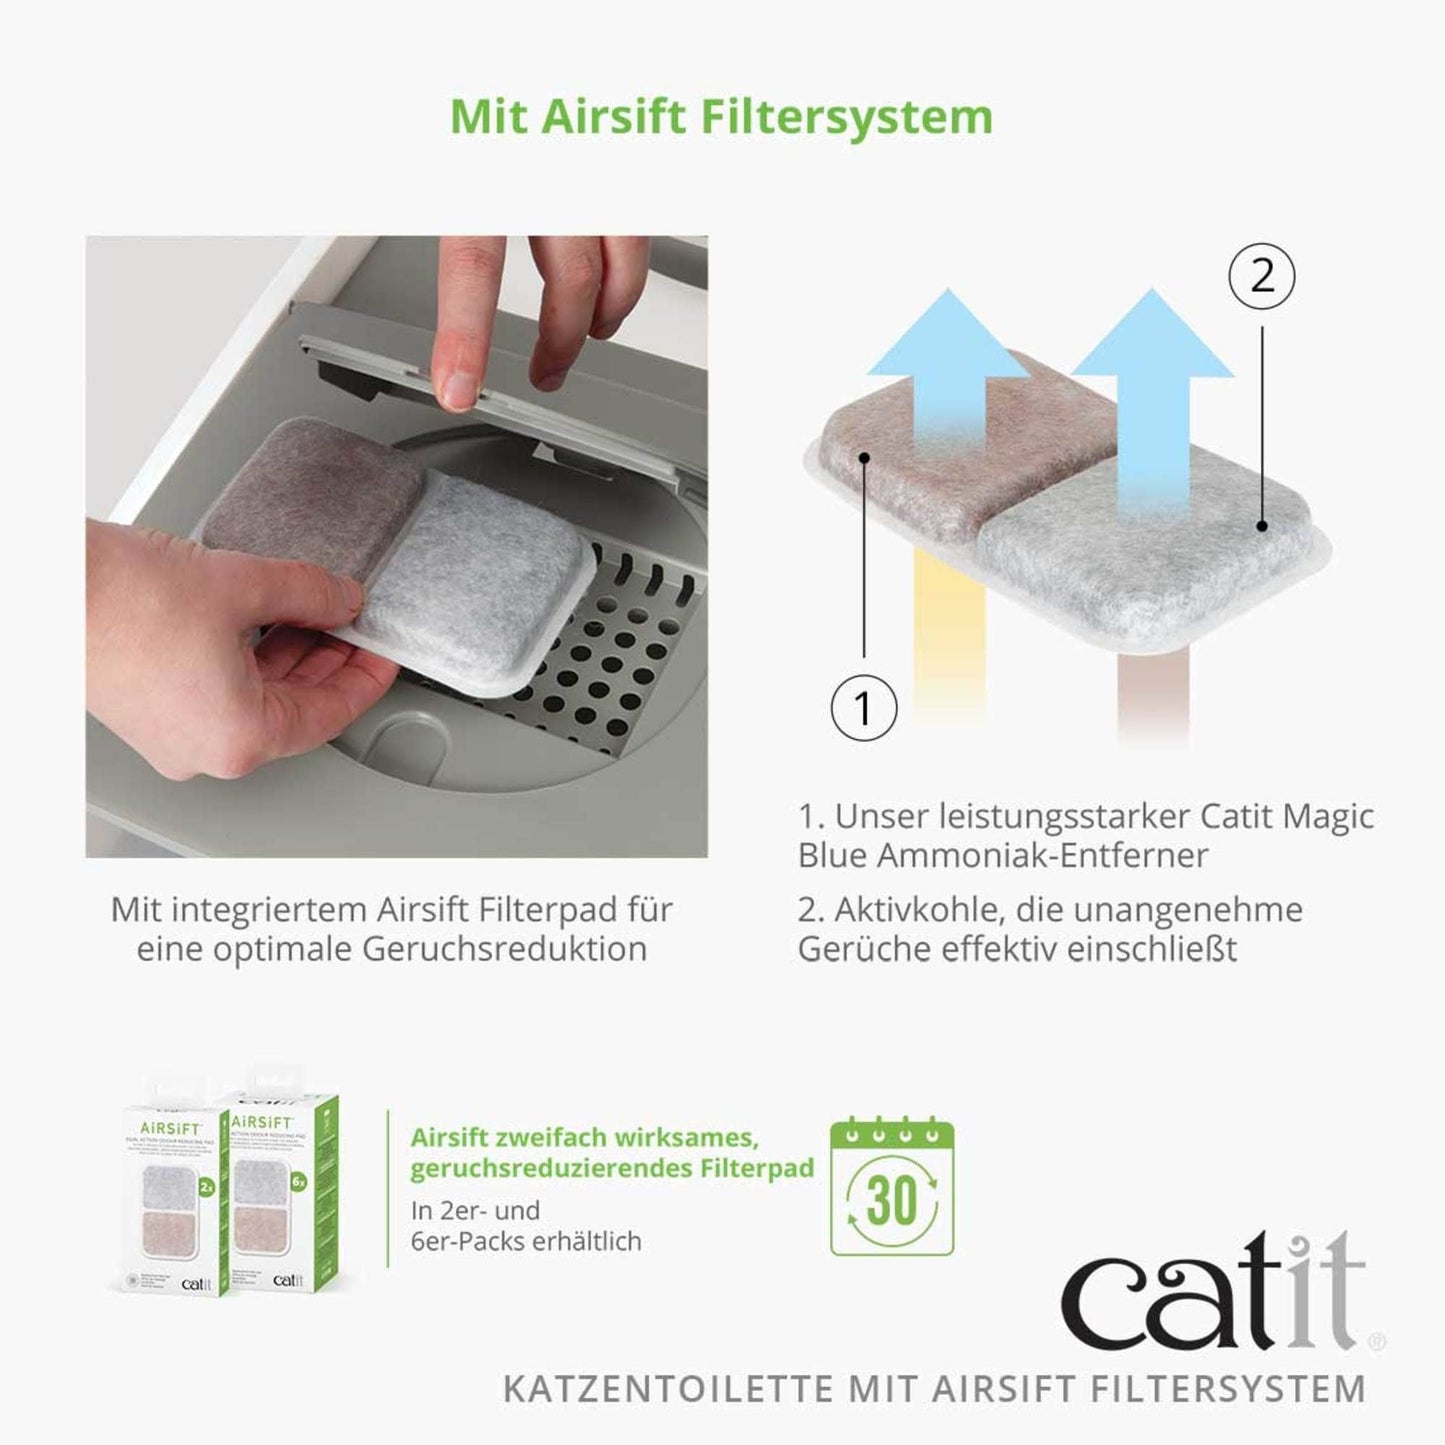 Catit Katzentoilette mit Dach und Airsift-Filtersystem - Jumbo